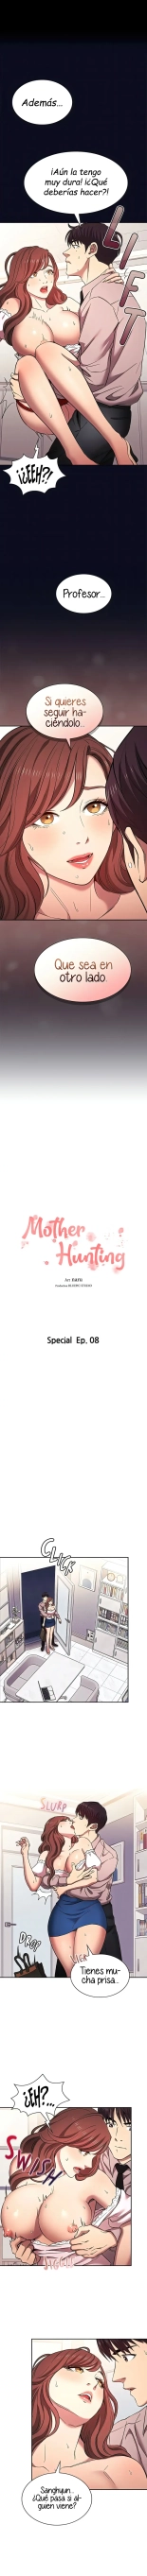 Mother Hunting【81~99】 : página 199